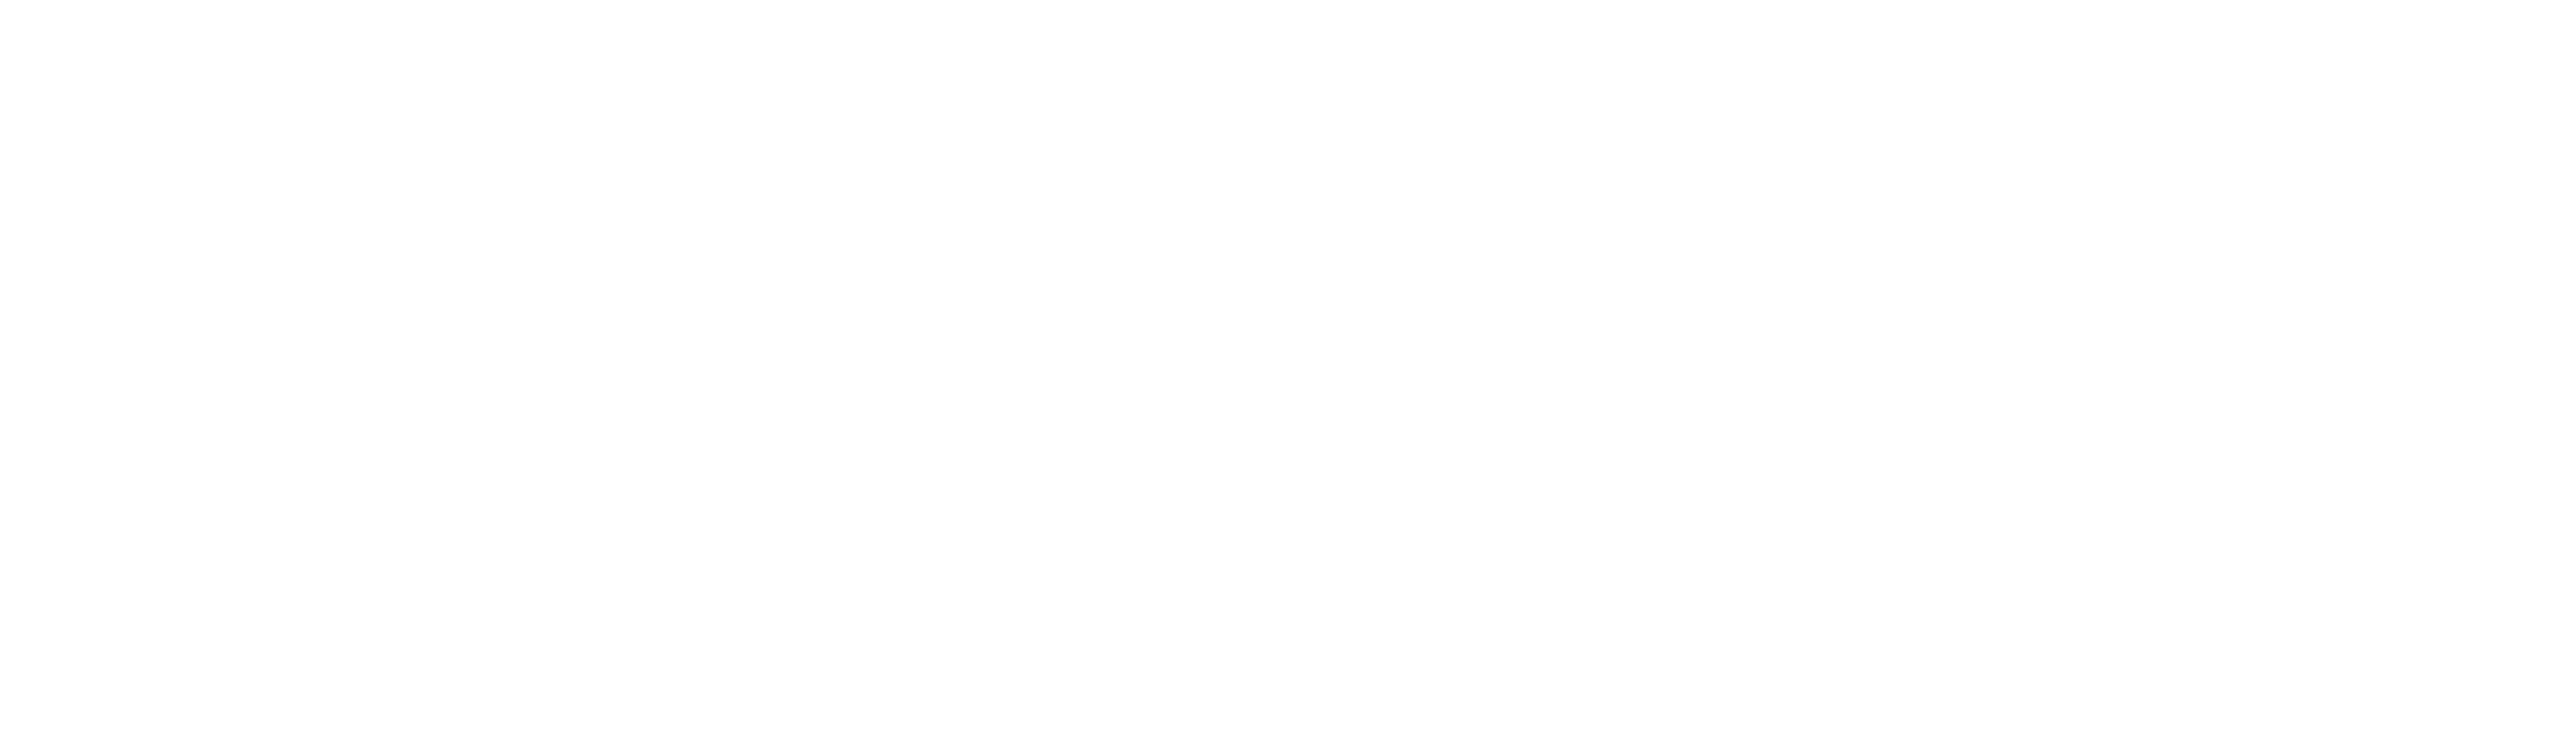 iGuide - circle stats